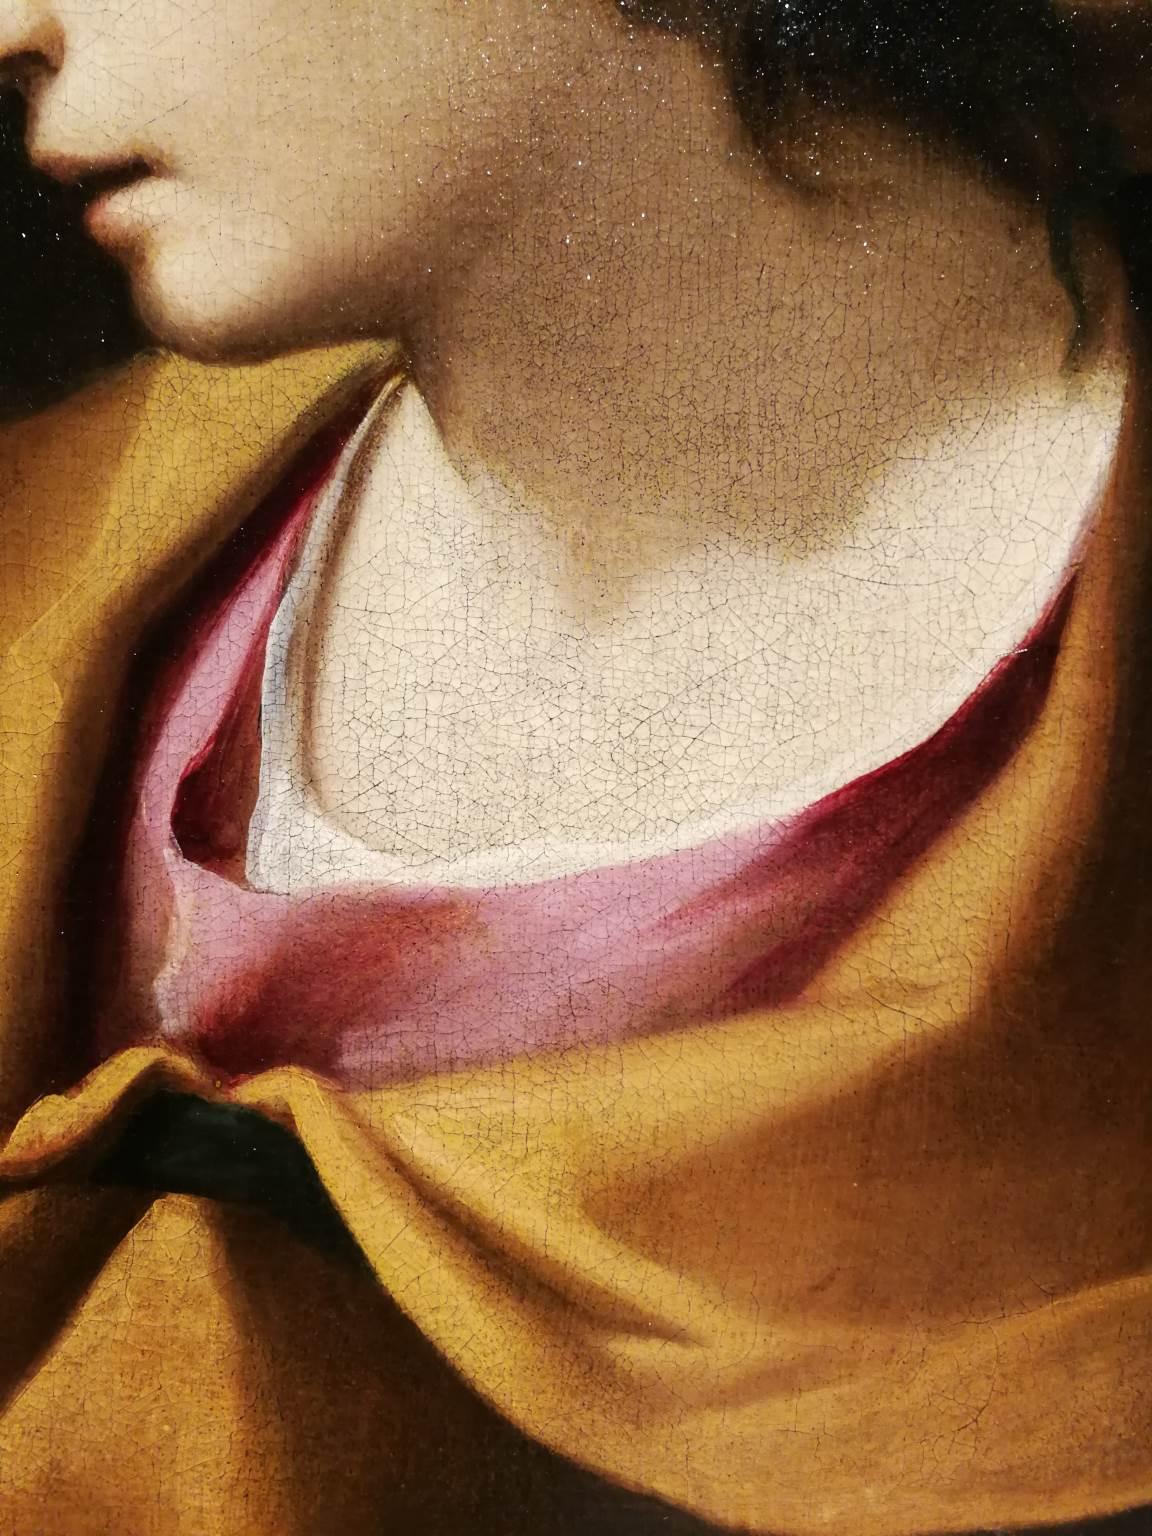 G Negri called Il Boccia Baroque Figurative Painting 17th century oil canvas - Brown Portrait Painting by Girolamo Negri called Il Boccia